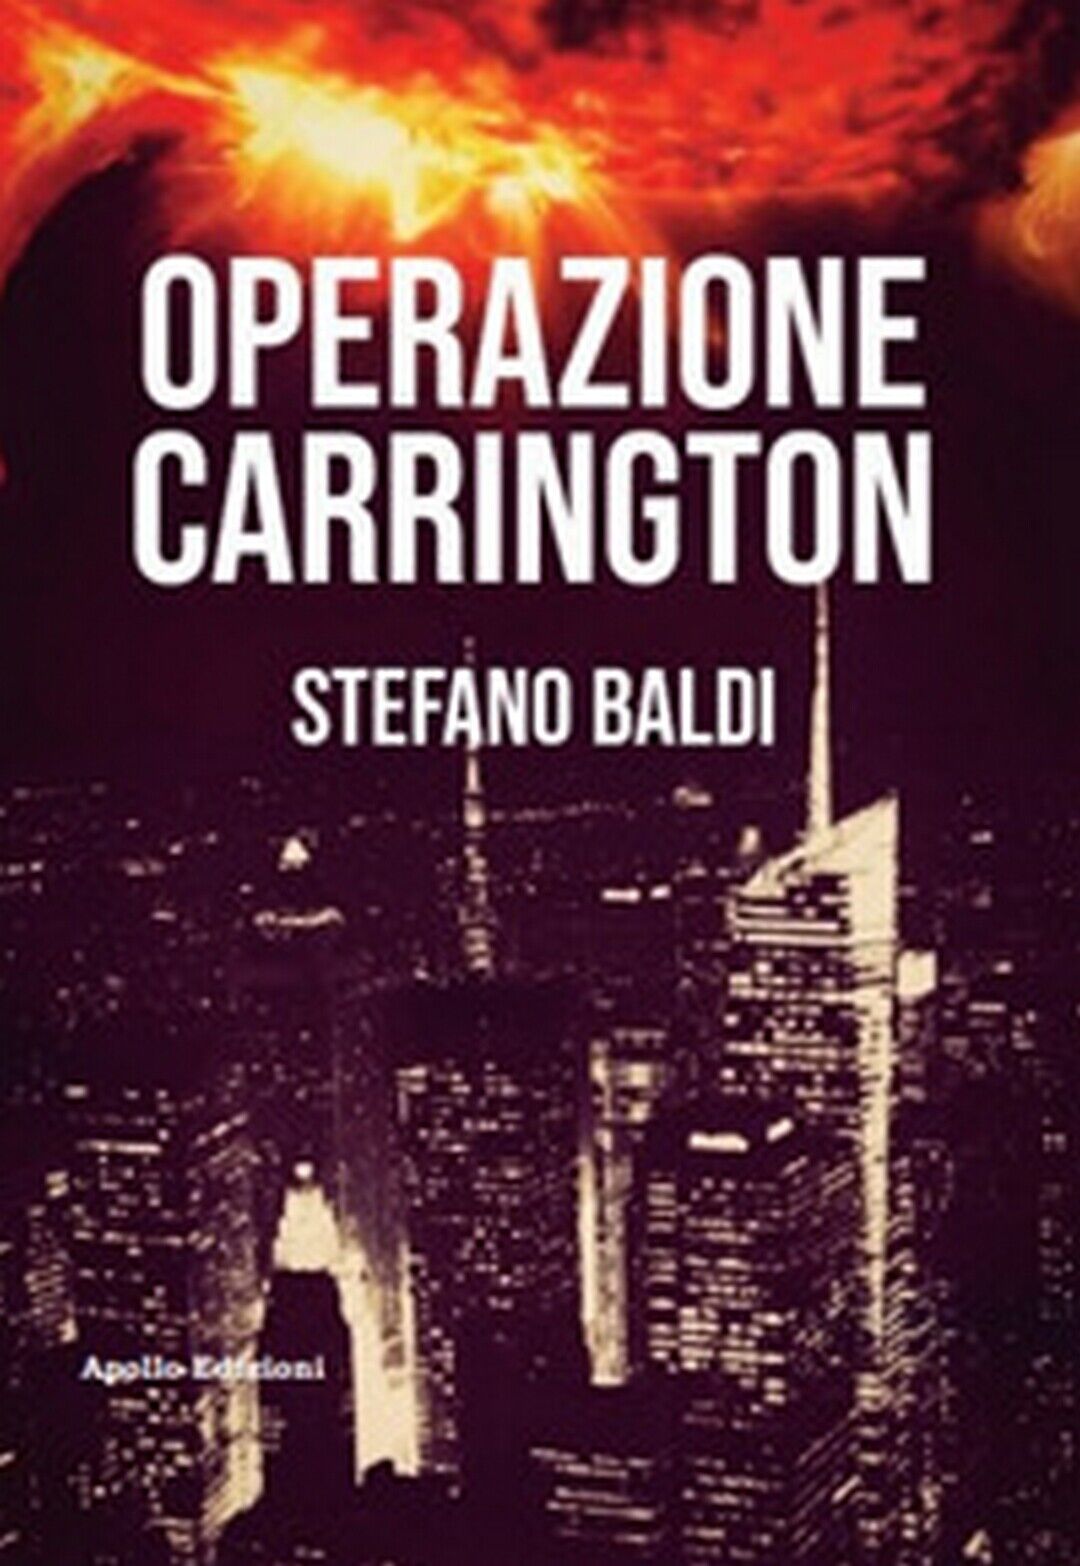 Operazione Carrington  di Stefano Baldi,  2019,  Apollo Edizioni